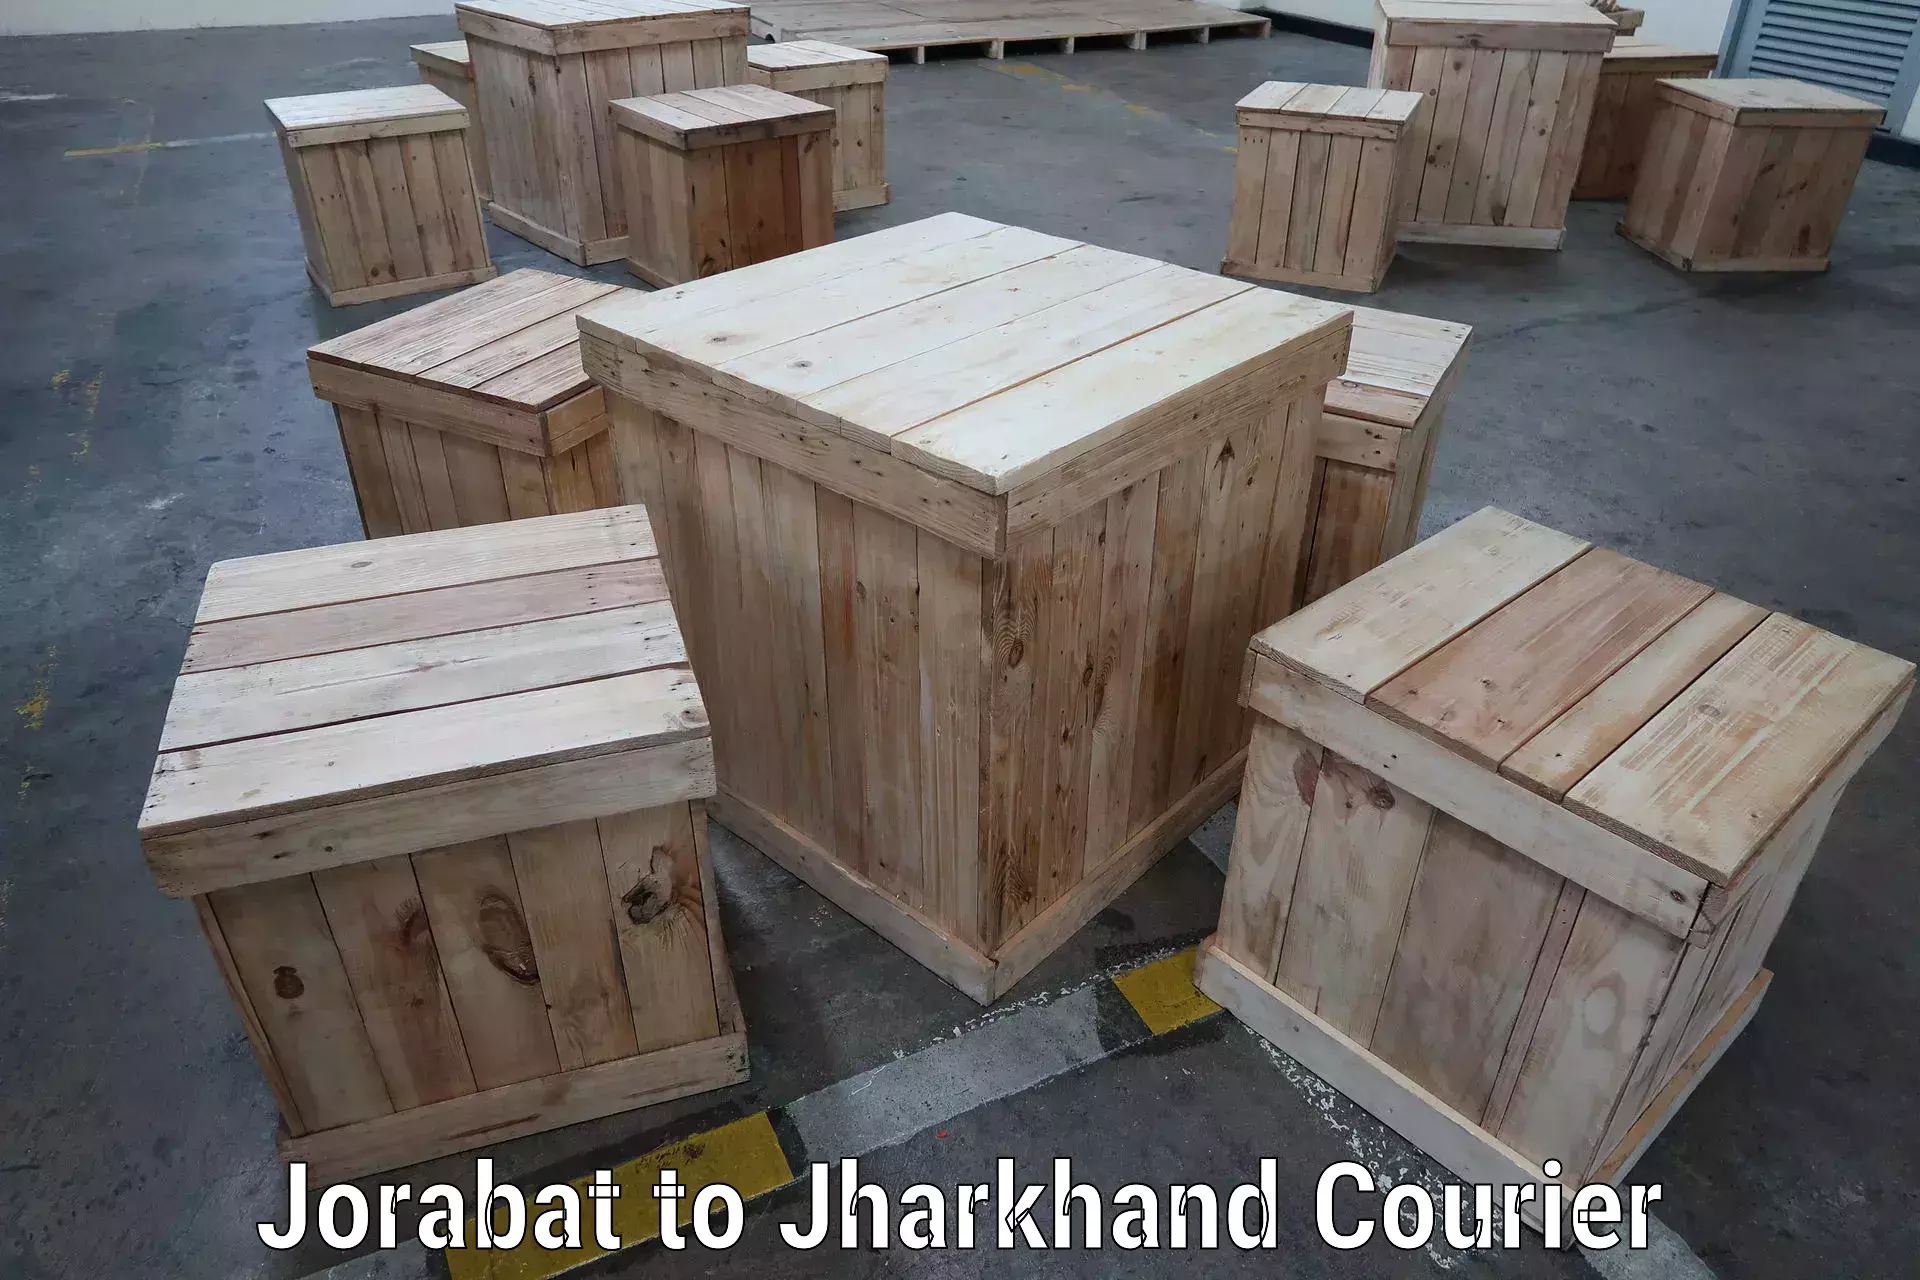 Full-service courier options Jorabat to Barki Saria